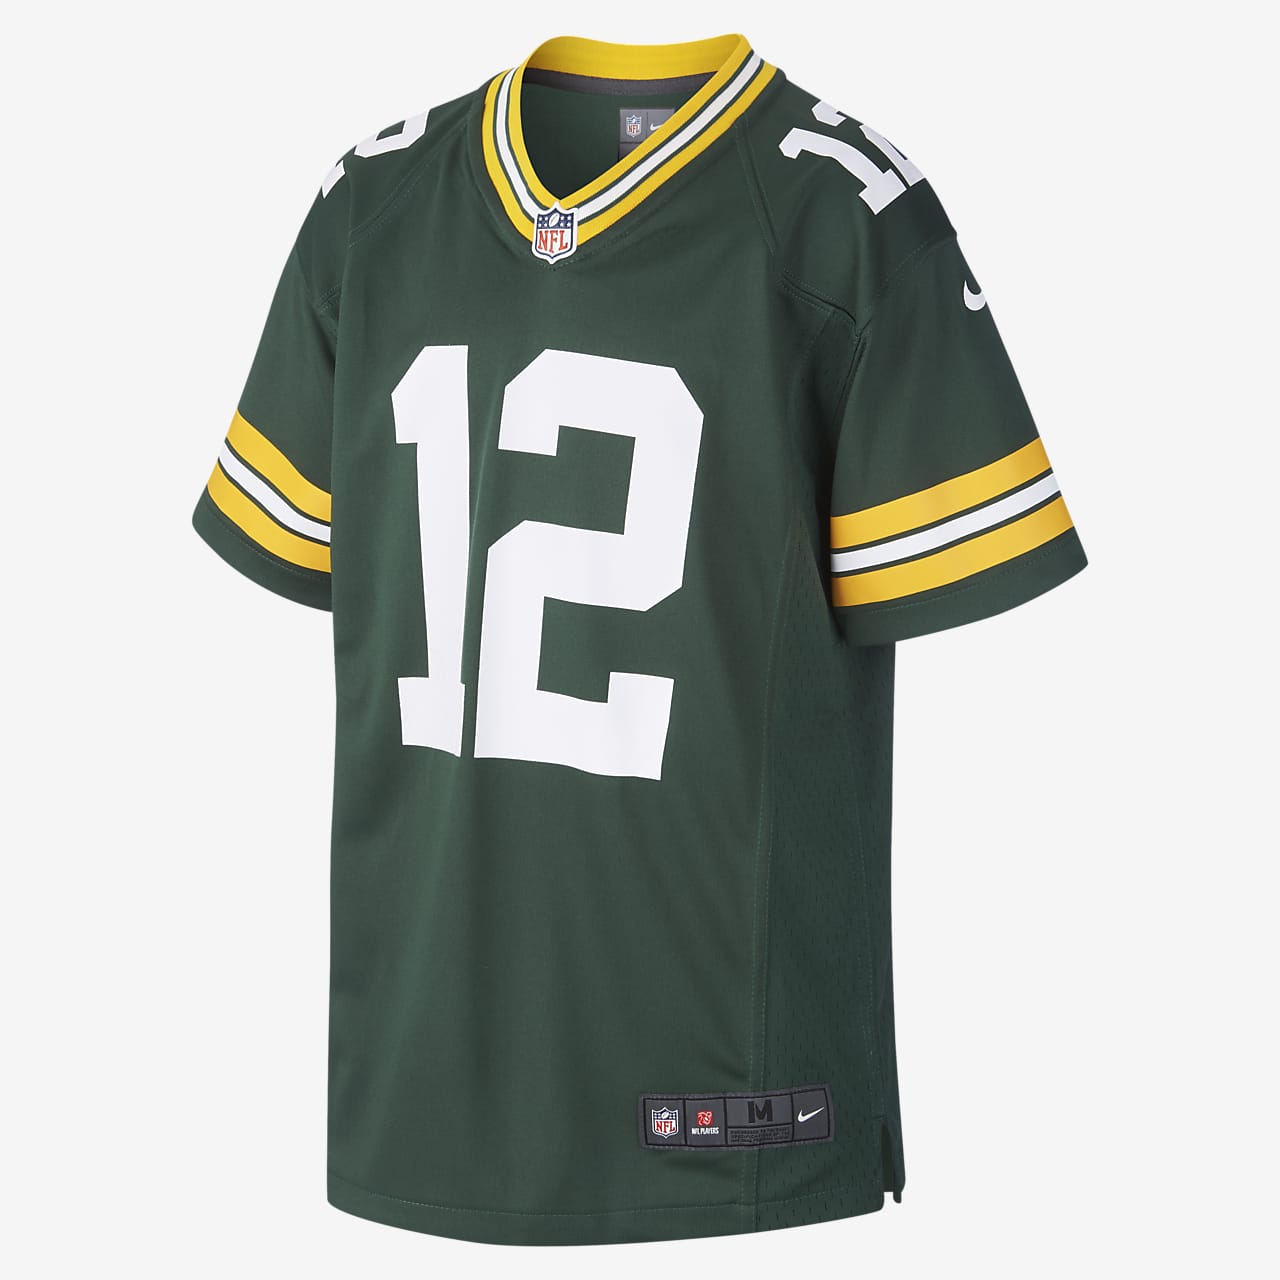 Dres na americký fotbal NFL Green Bay Packers Game Jersey (Aaron Rodgers) pro větší děti